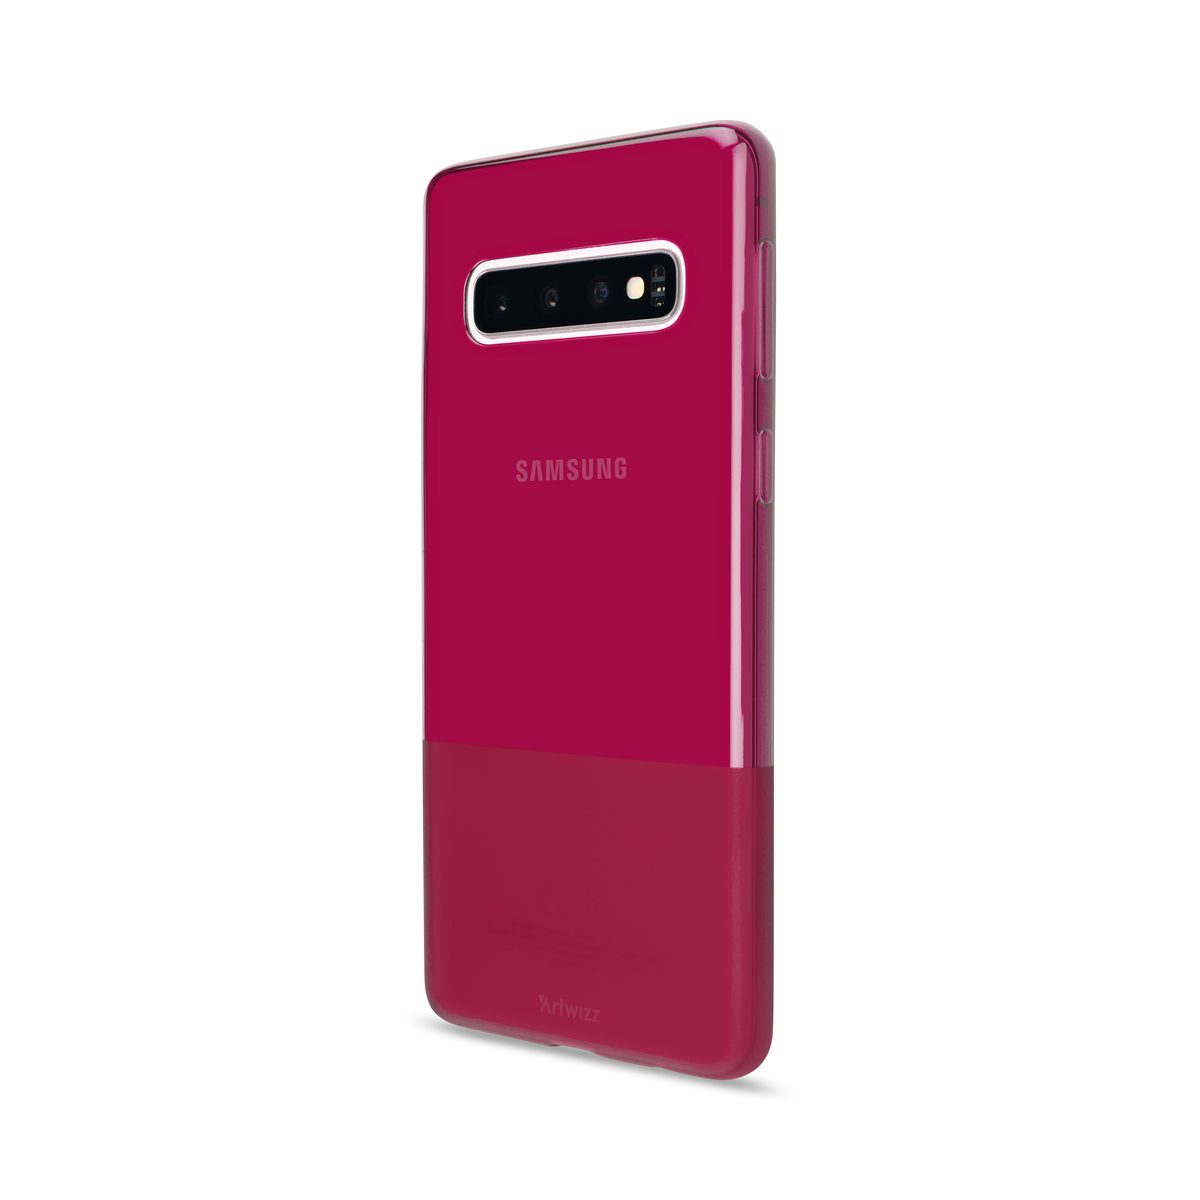 Berry Samsung, Backcover, NextSkin, ARTWIZZ Galaxy S10,